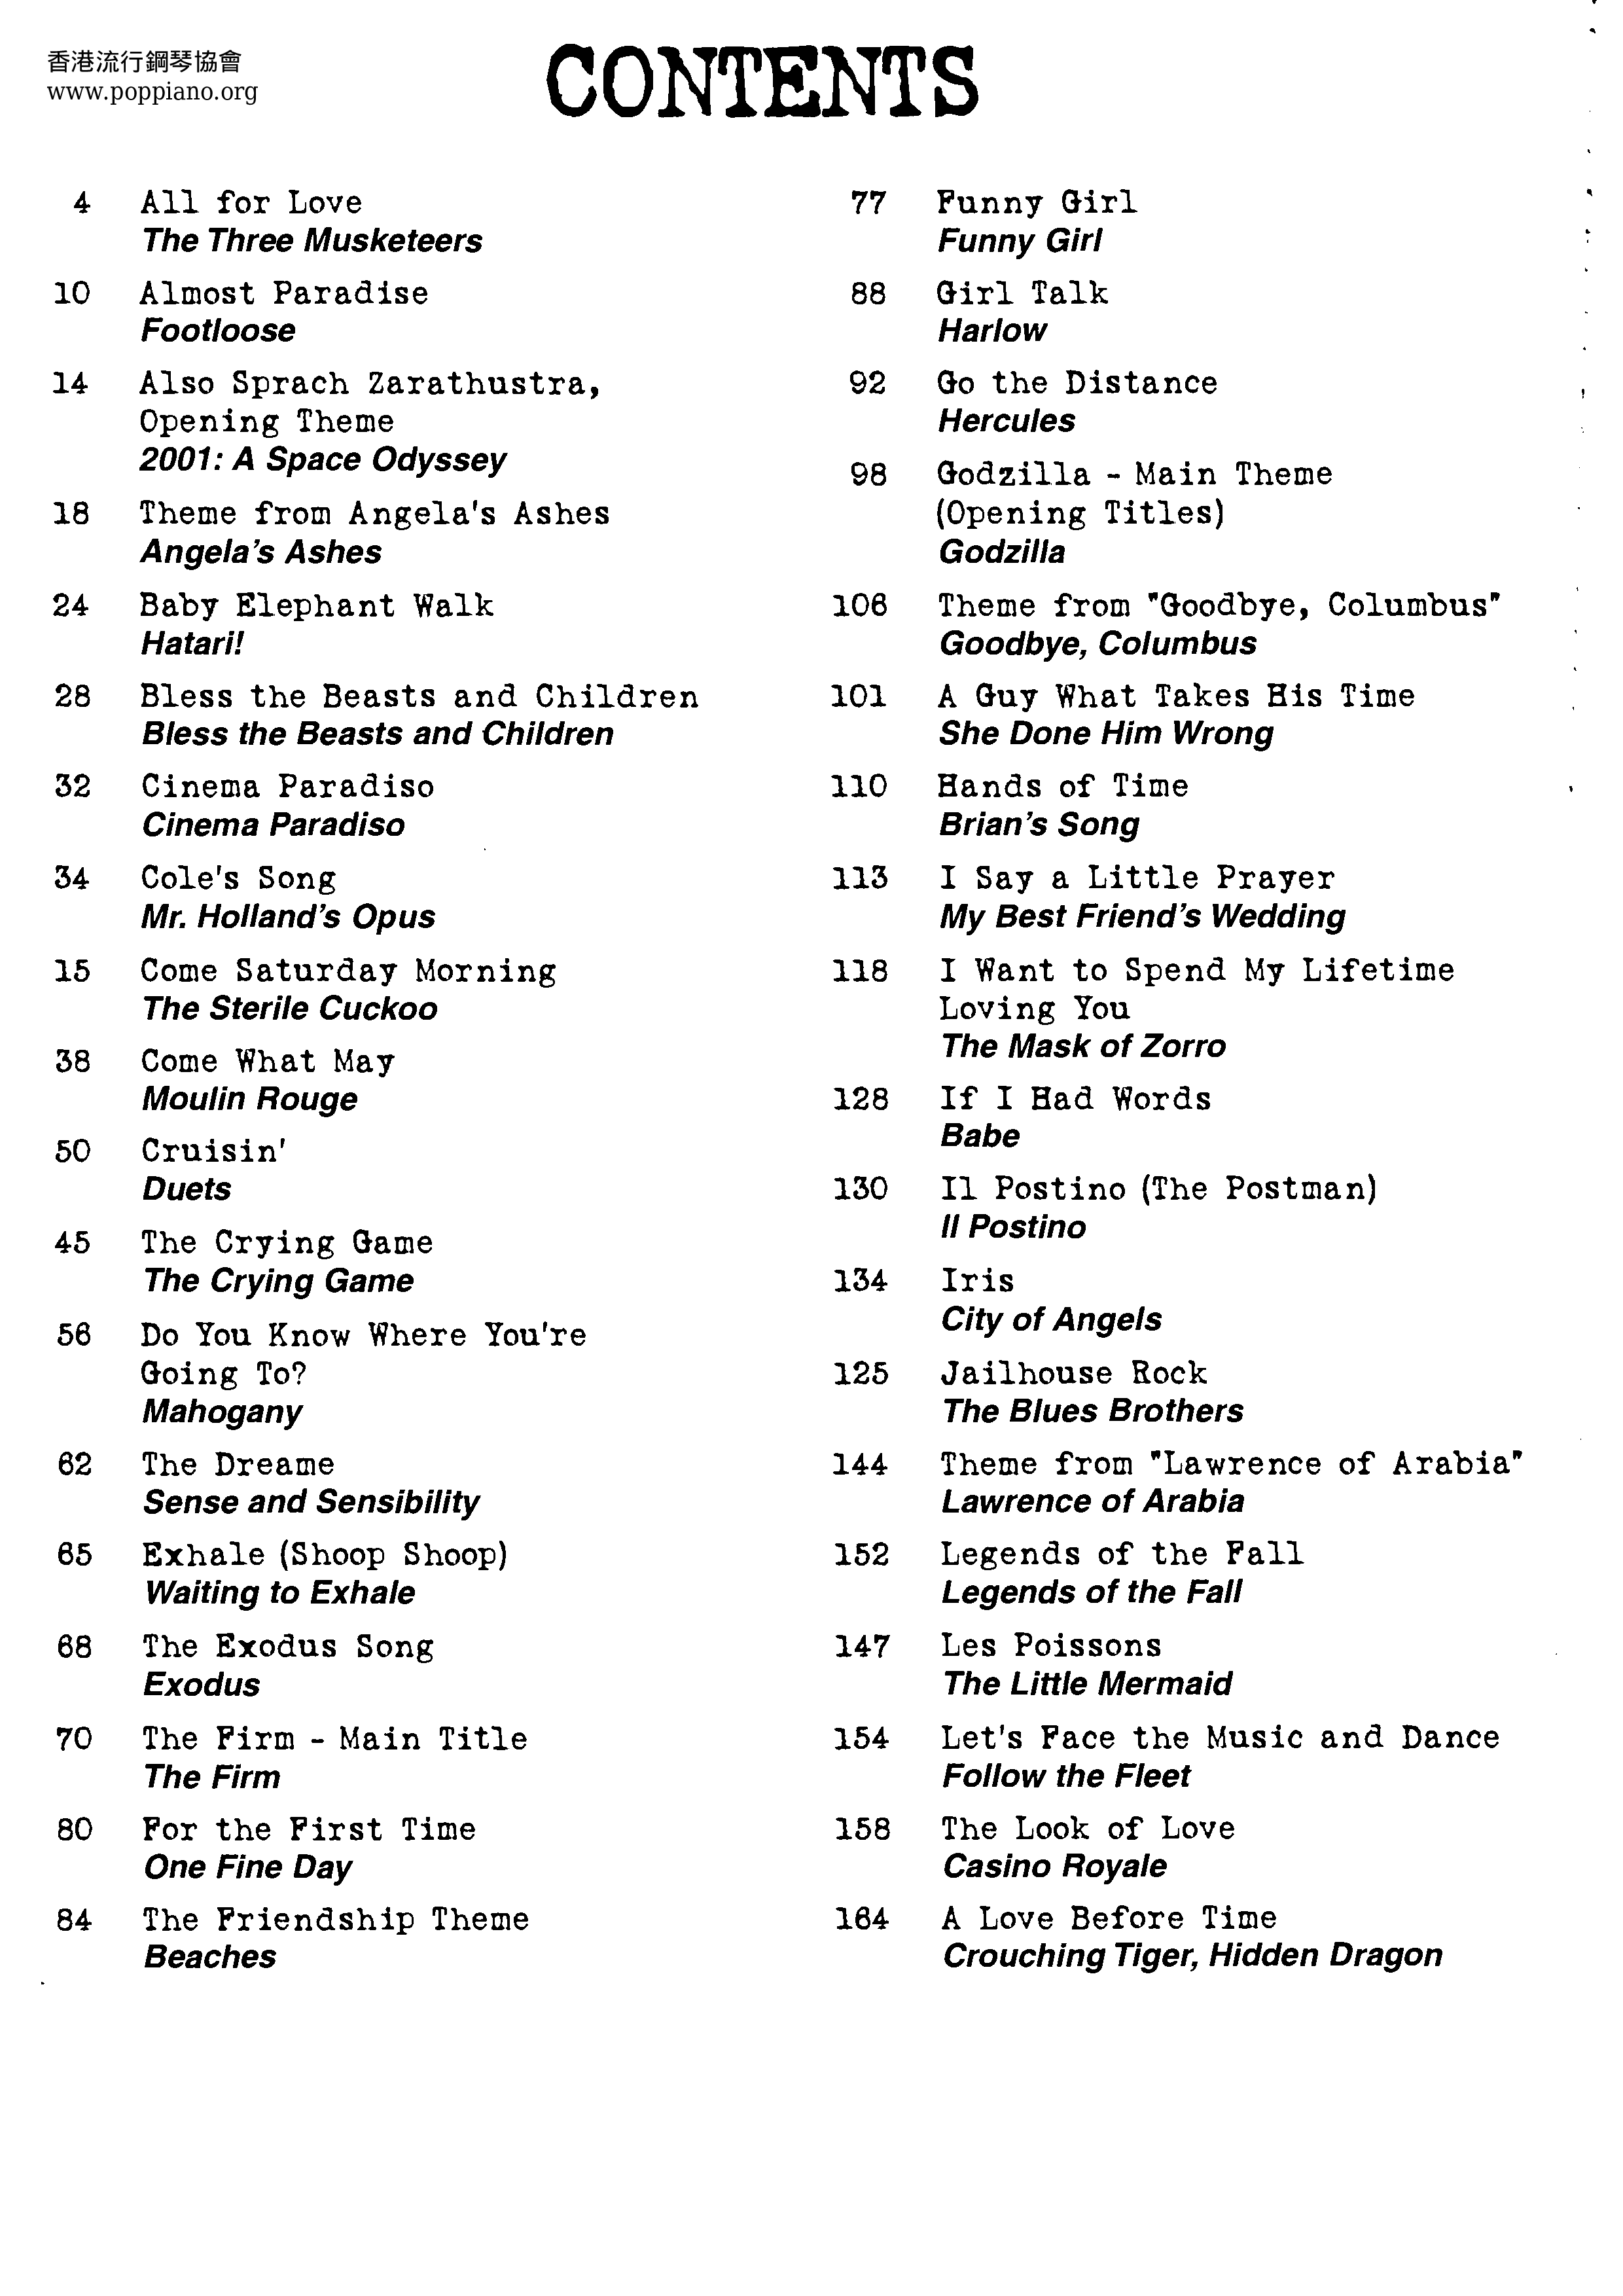 Movie Songs - 76 Songs Score